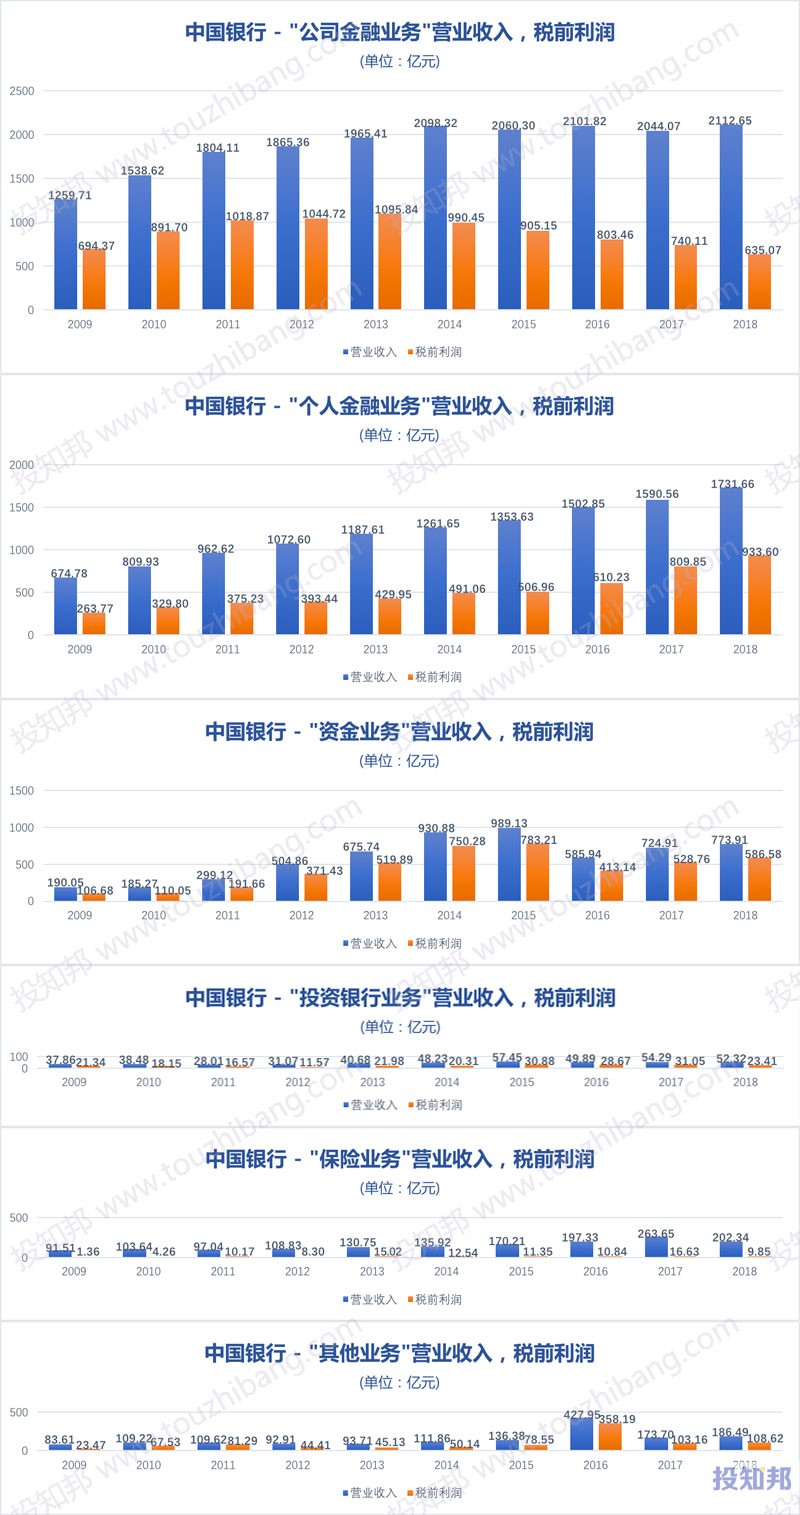 图解中国银行(601988)财报数据(2009年～2019年Q3)